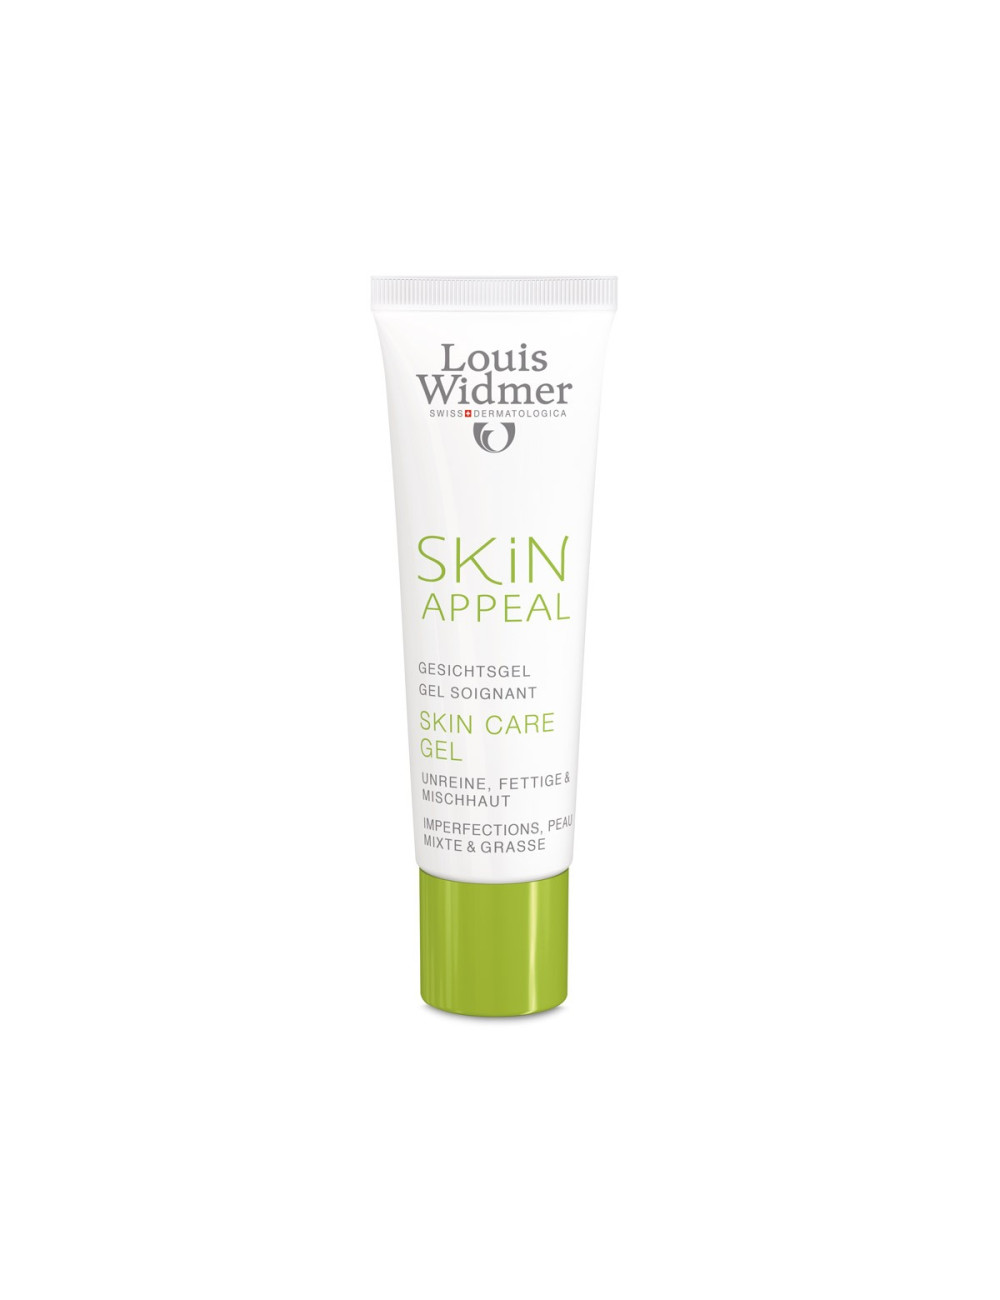 Louis Widmer Skin Appeal Skin Care Gel